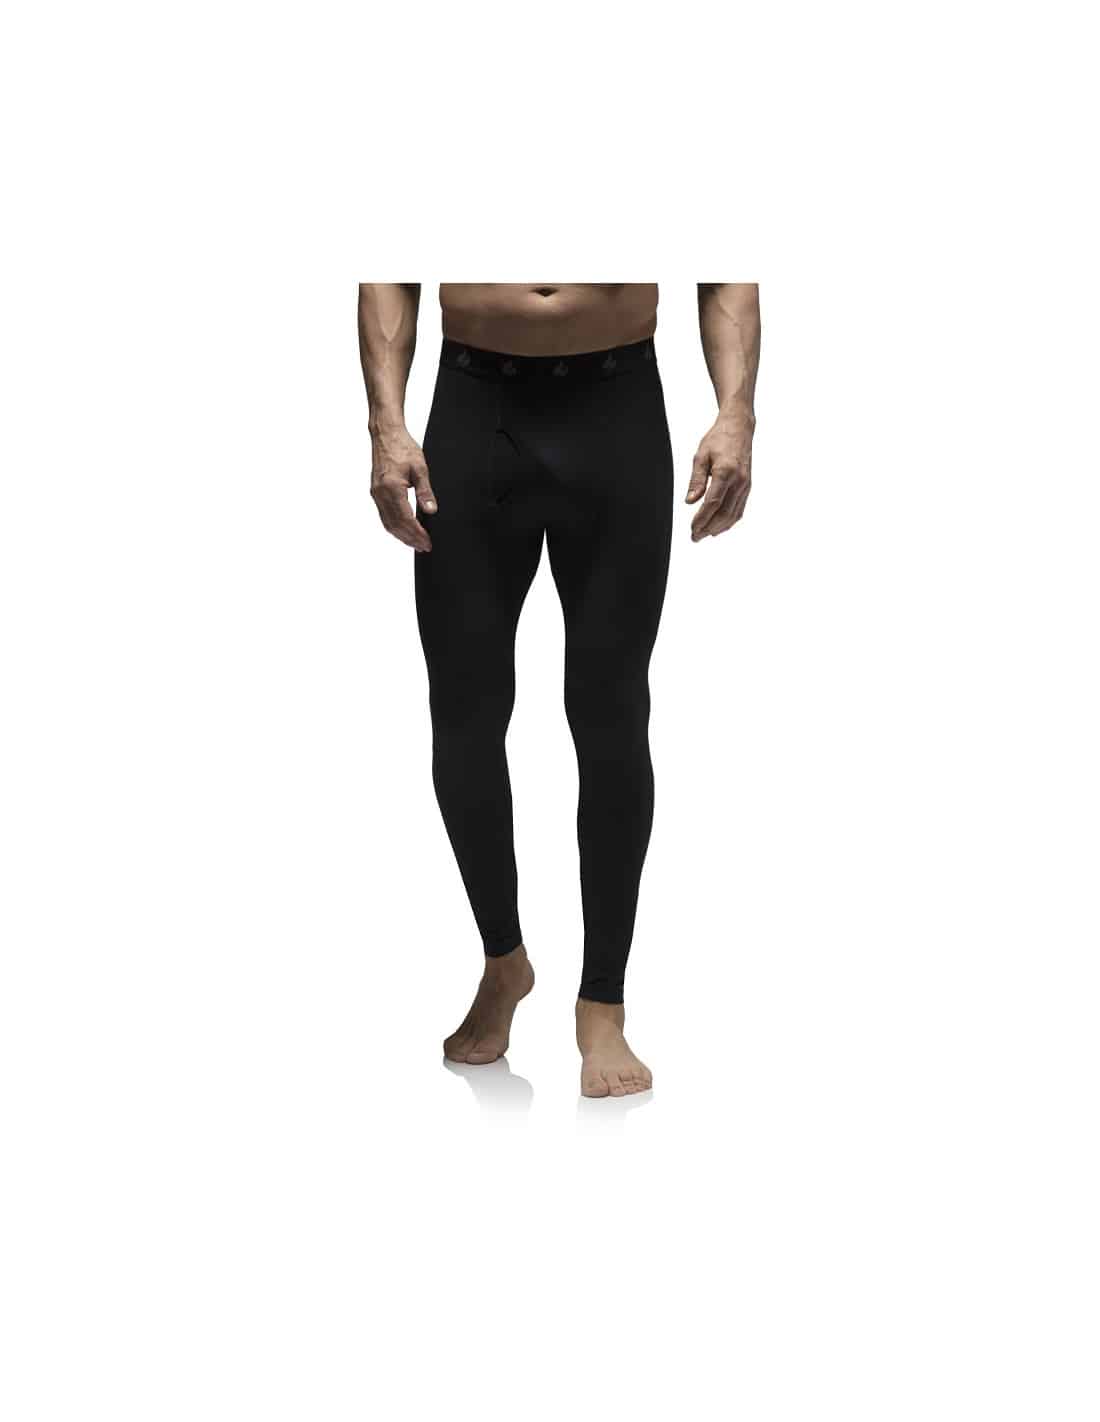 Pantalon thermique HEAT HOLDERS pour homme – Heat Holders